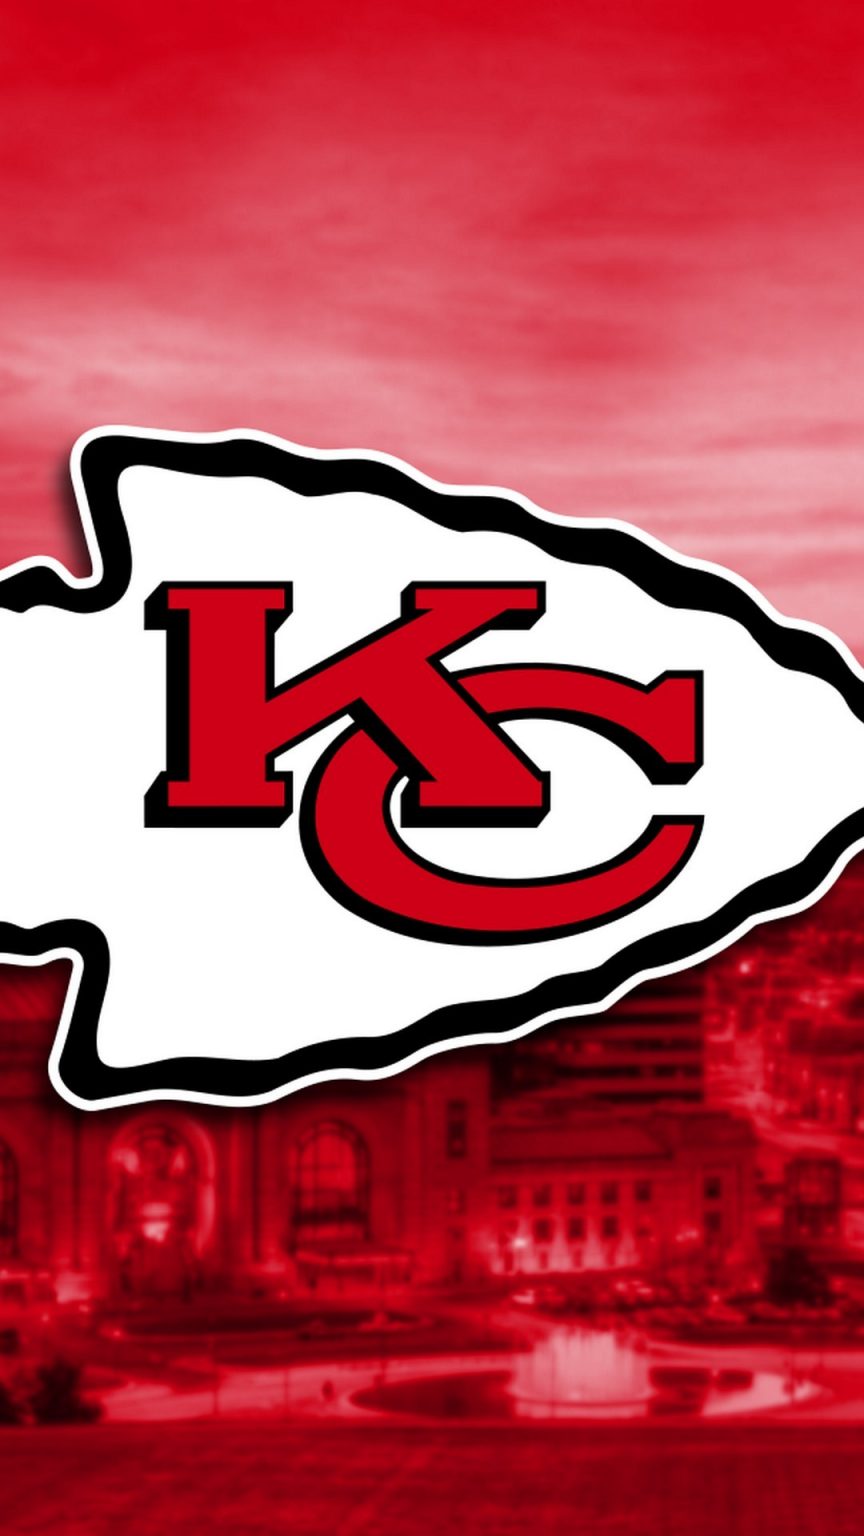 Kansas City Chiefs NFL iPhone Screensaver - 2022 NFL iPhone Wallpaper